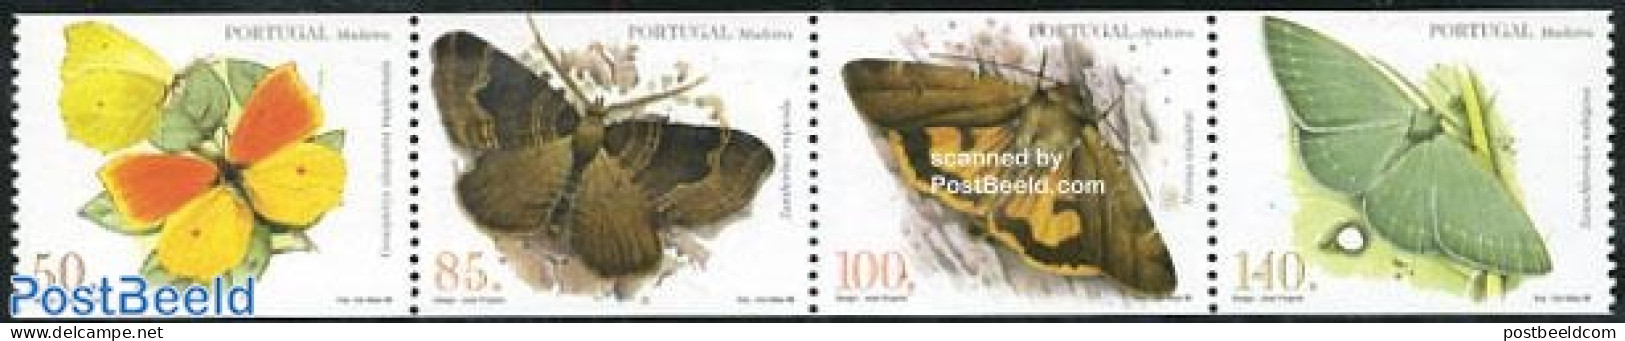 Madeira 1998 Butterflies 4v From Booklet, Mint NH, Nature - Butterflies - Madeira